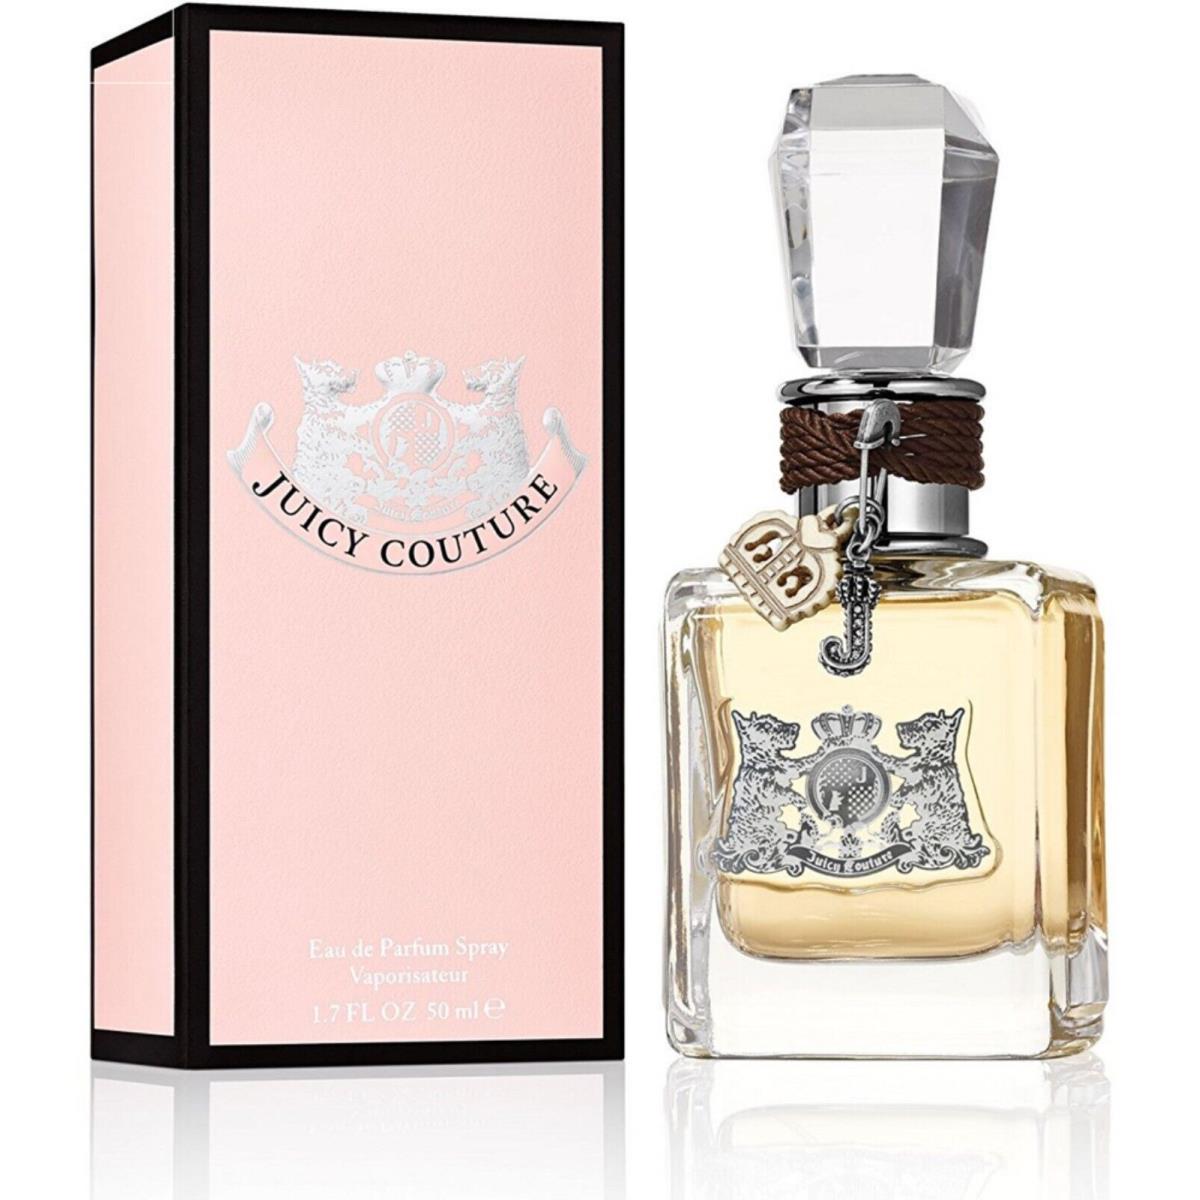 Juicy Couture 1.7 oz / 50 ml Eau De Parfum Edp Perfume Spray Women